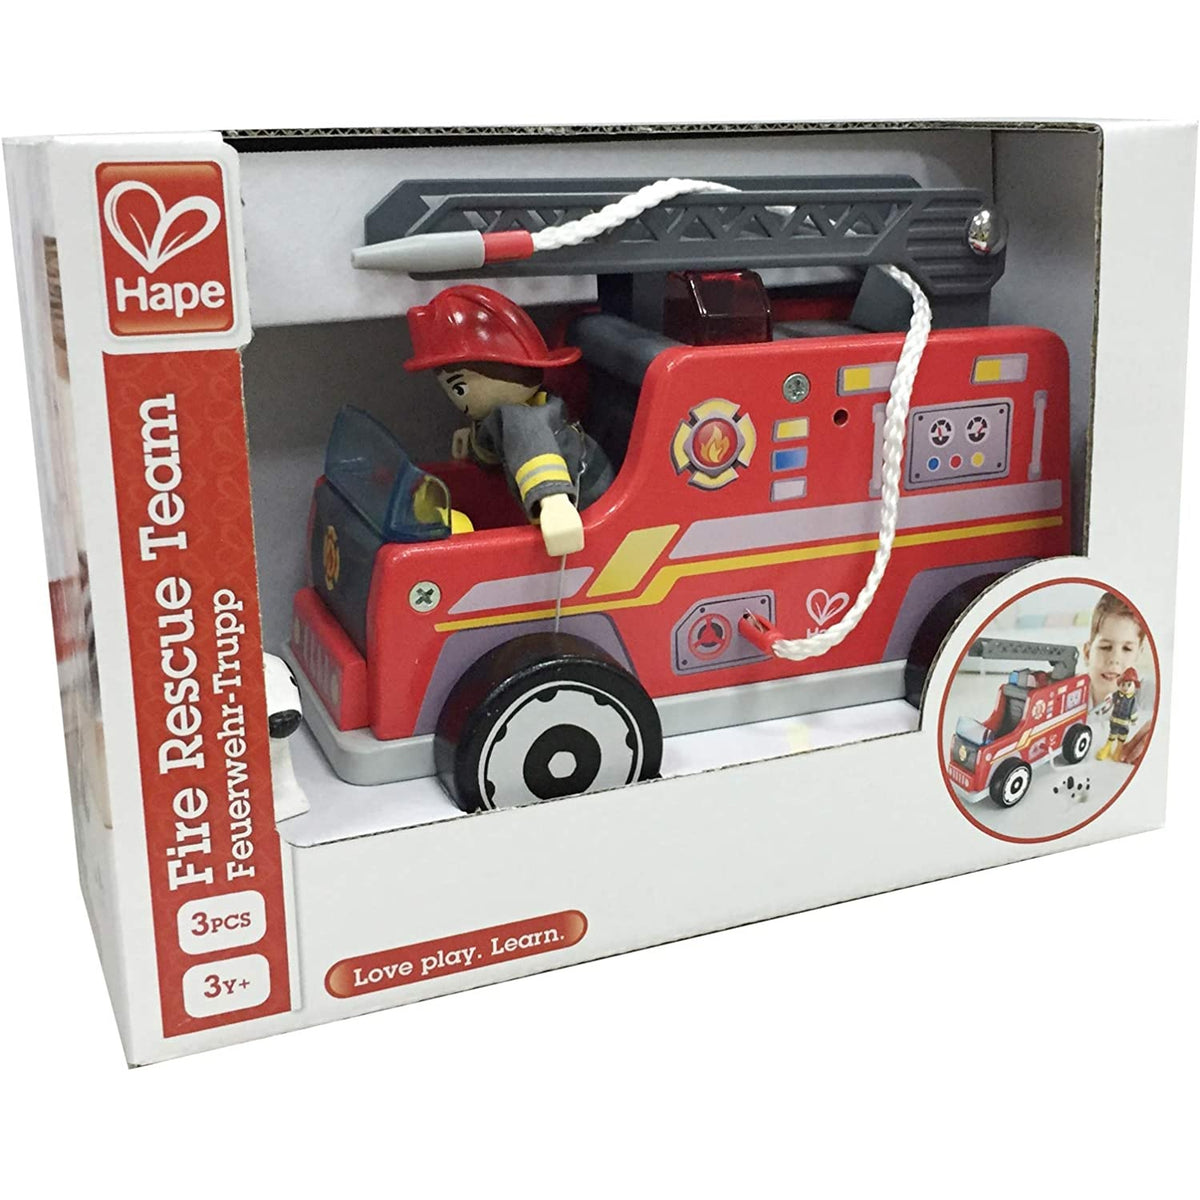 Hape E3024 Fire Rescue Team Fire Truck, Wood, Multicolored